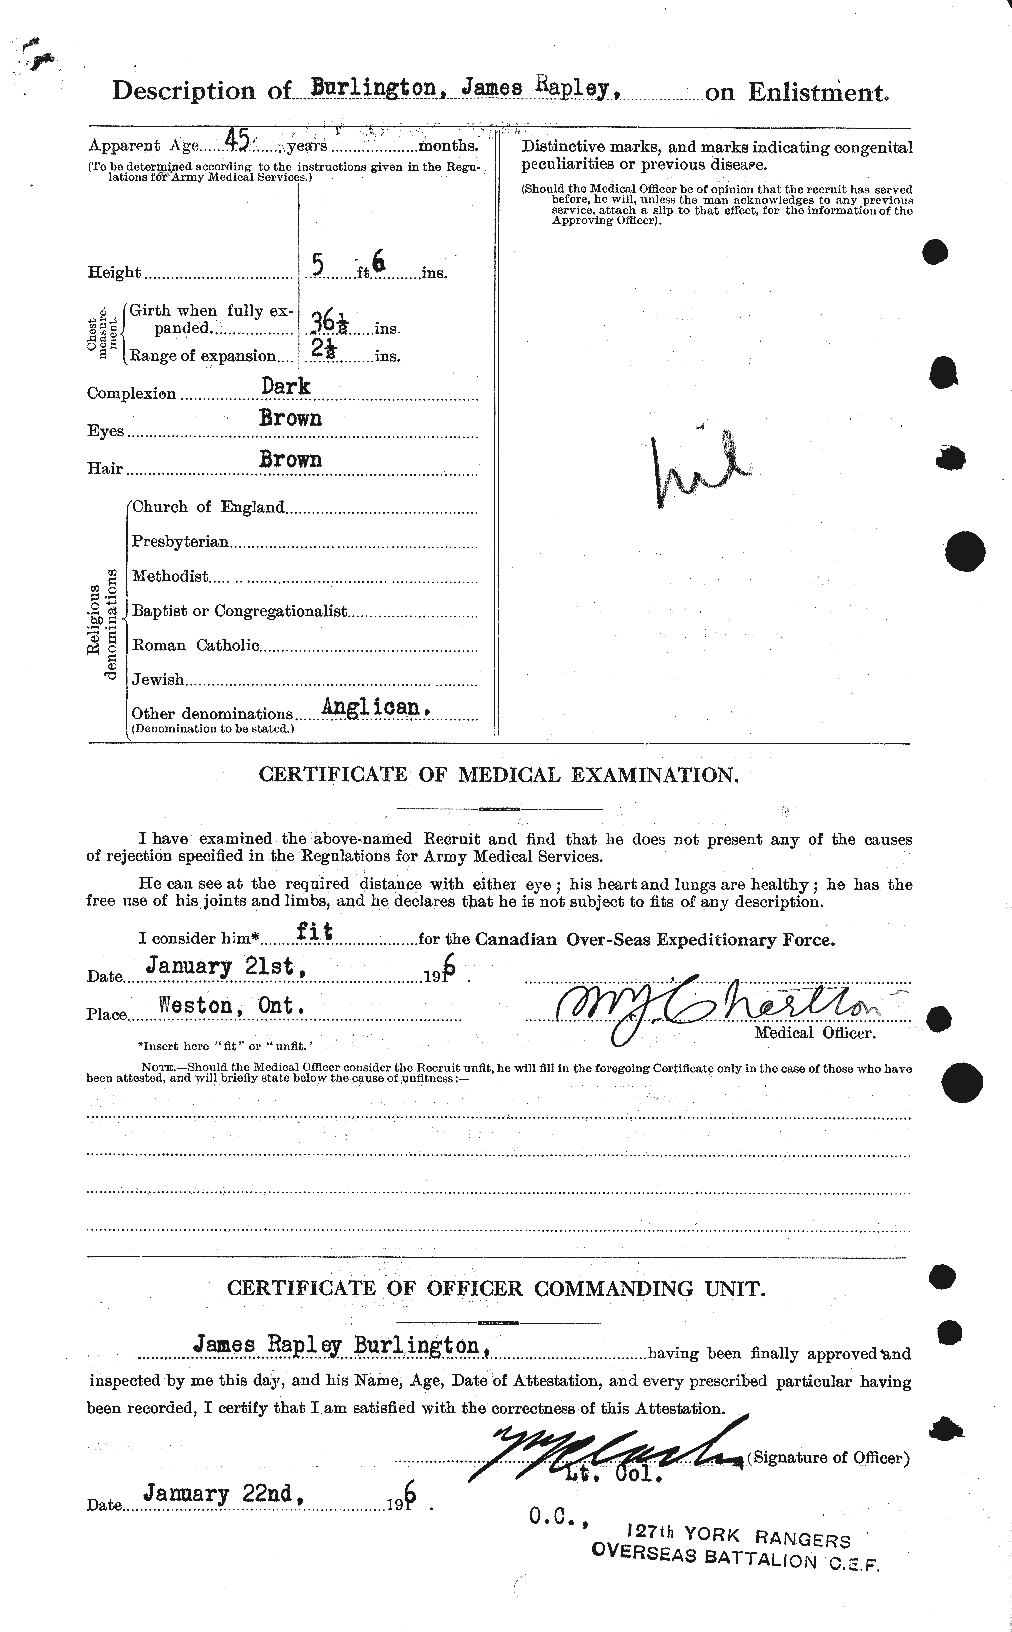 Dossiers du Personnel de la Première Guerre mondiale - CEC 271885b